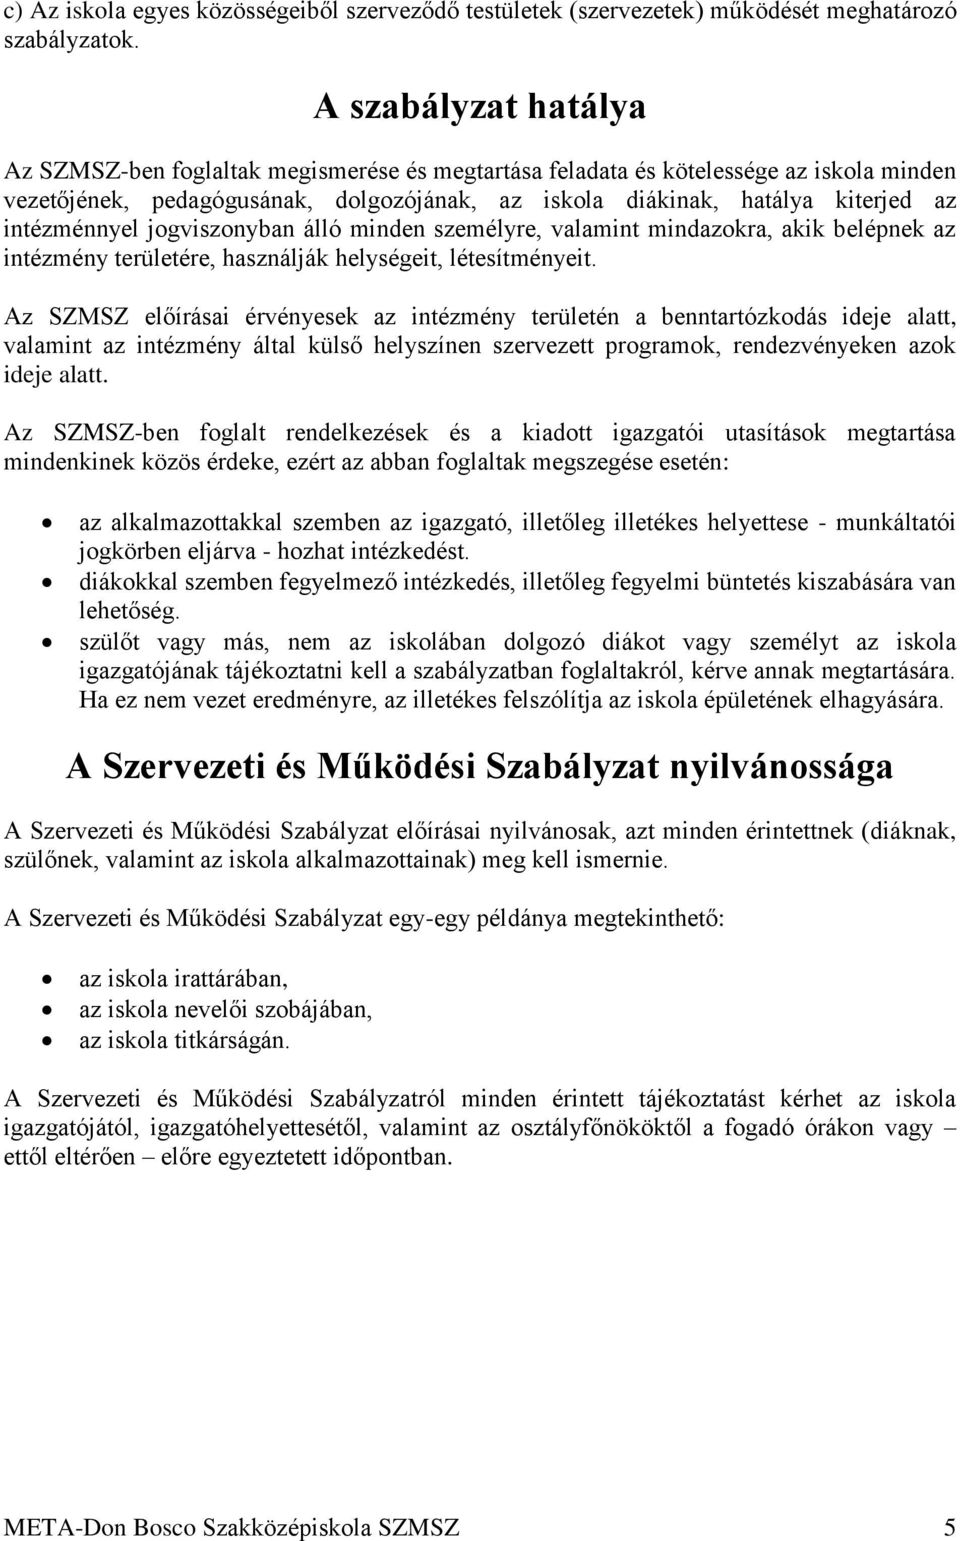 Szervezeti és Működési Szabályzat META-DON BOSCO Szakközépiskola Budapest,  PDF Free Download